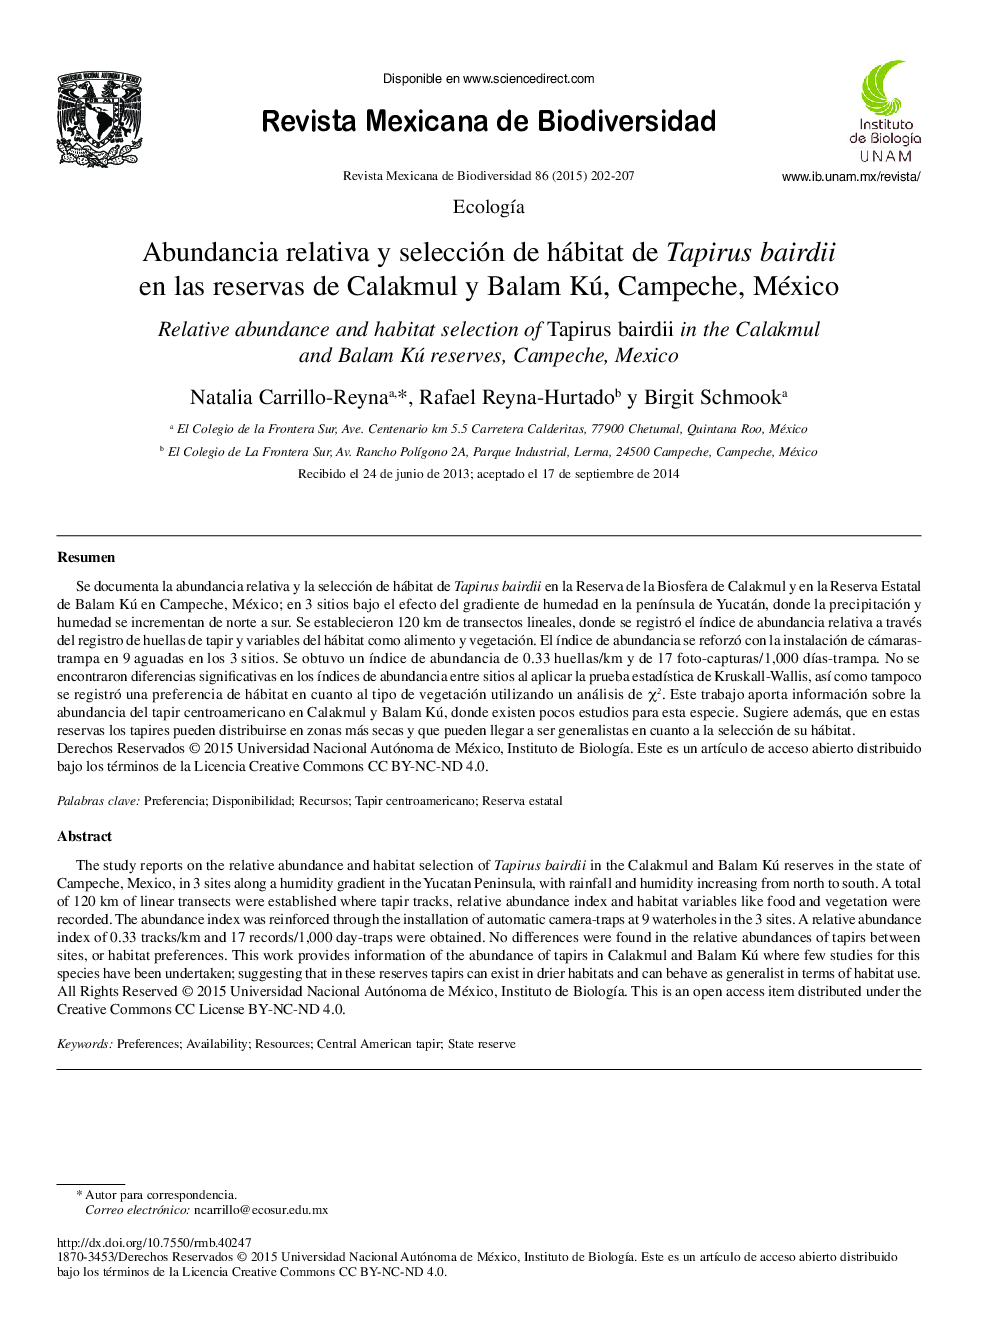 Abundancia relativa y selección de hábitat de Tapirus bairdii en las reservas de Calakmul y Balam Kú, Campeche, México